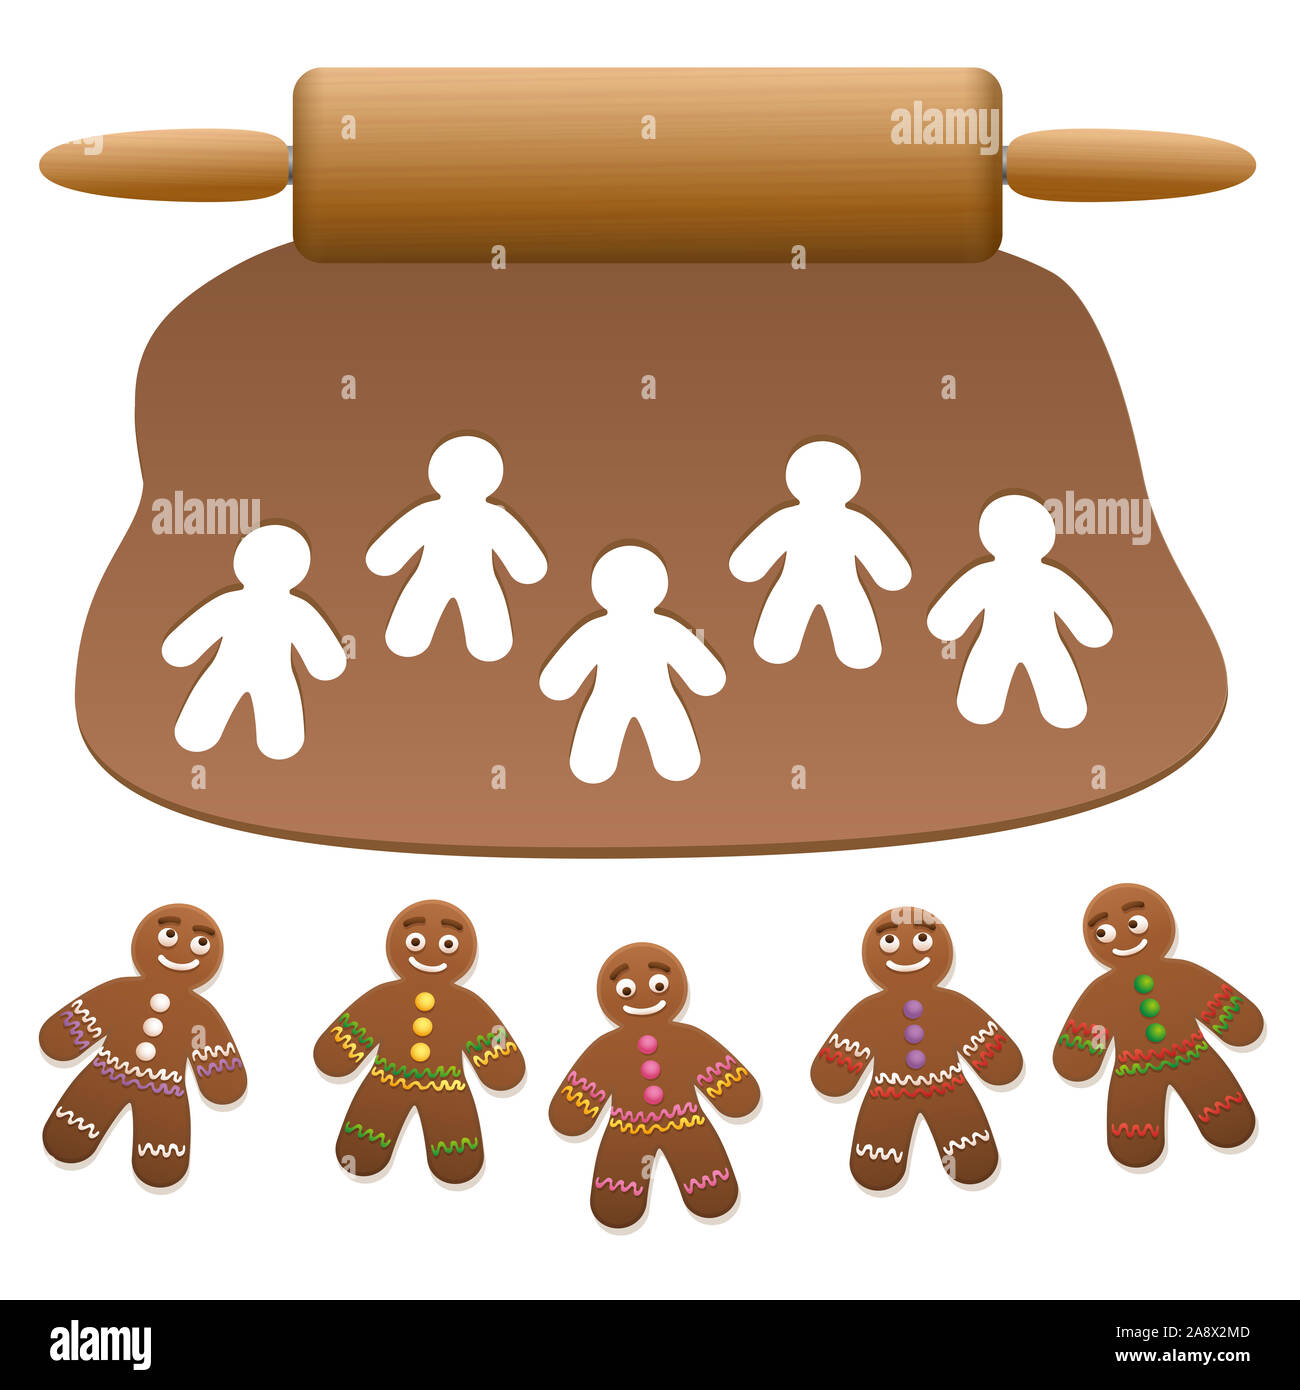 Gingerbread Man Gruppe. Lebkuchen Teig mit einem Nudelholz und schneiden Sie Lebkuchen Cookies - Abbildung auf weißen Hintergrund. Stockfoto